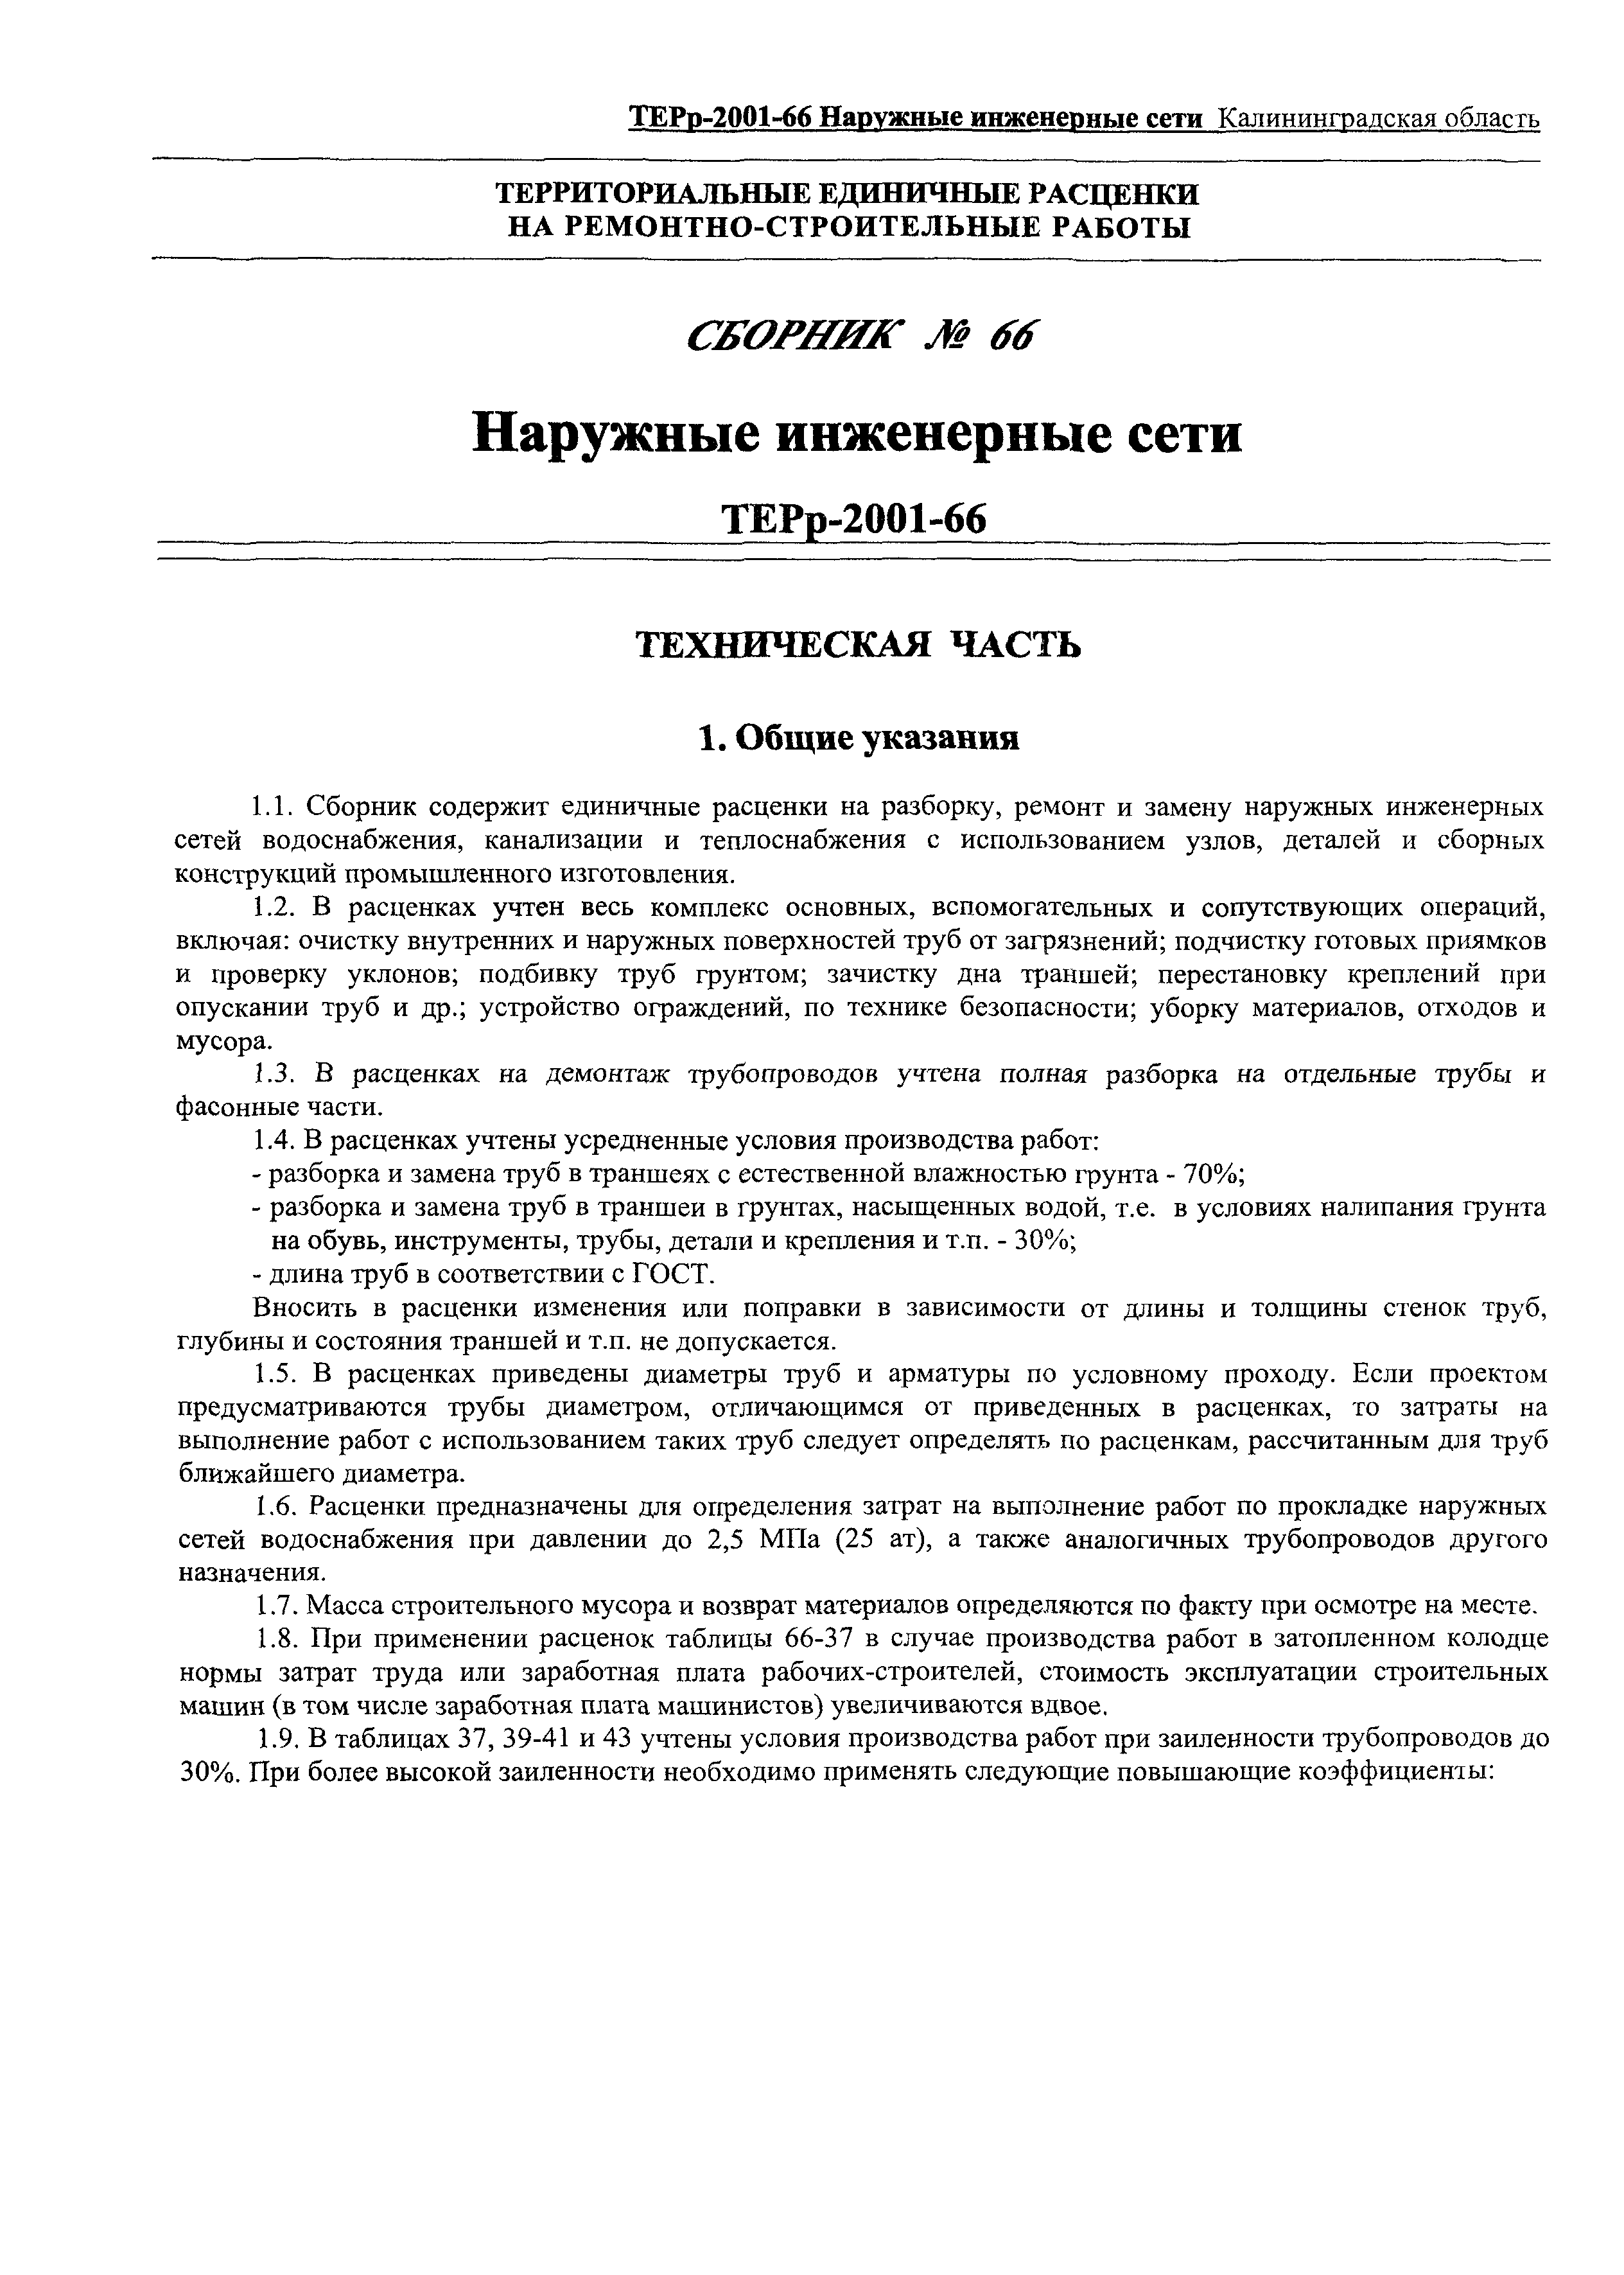 ТЕРр Калининградской области 2001-66